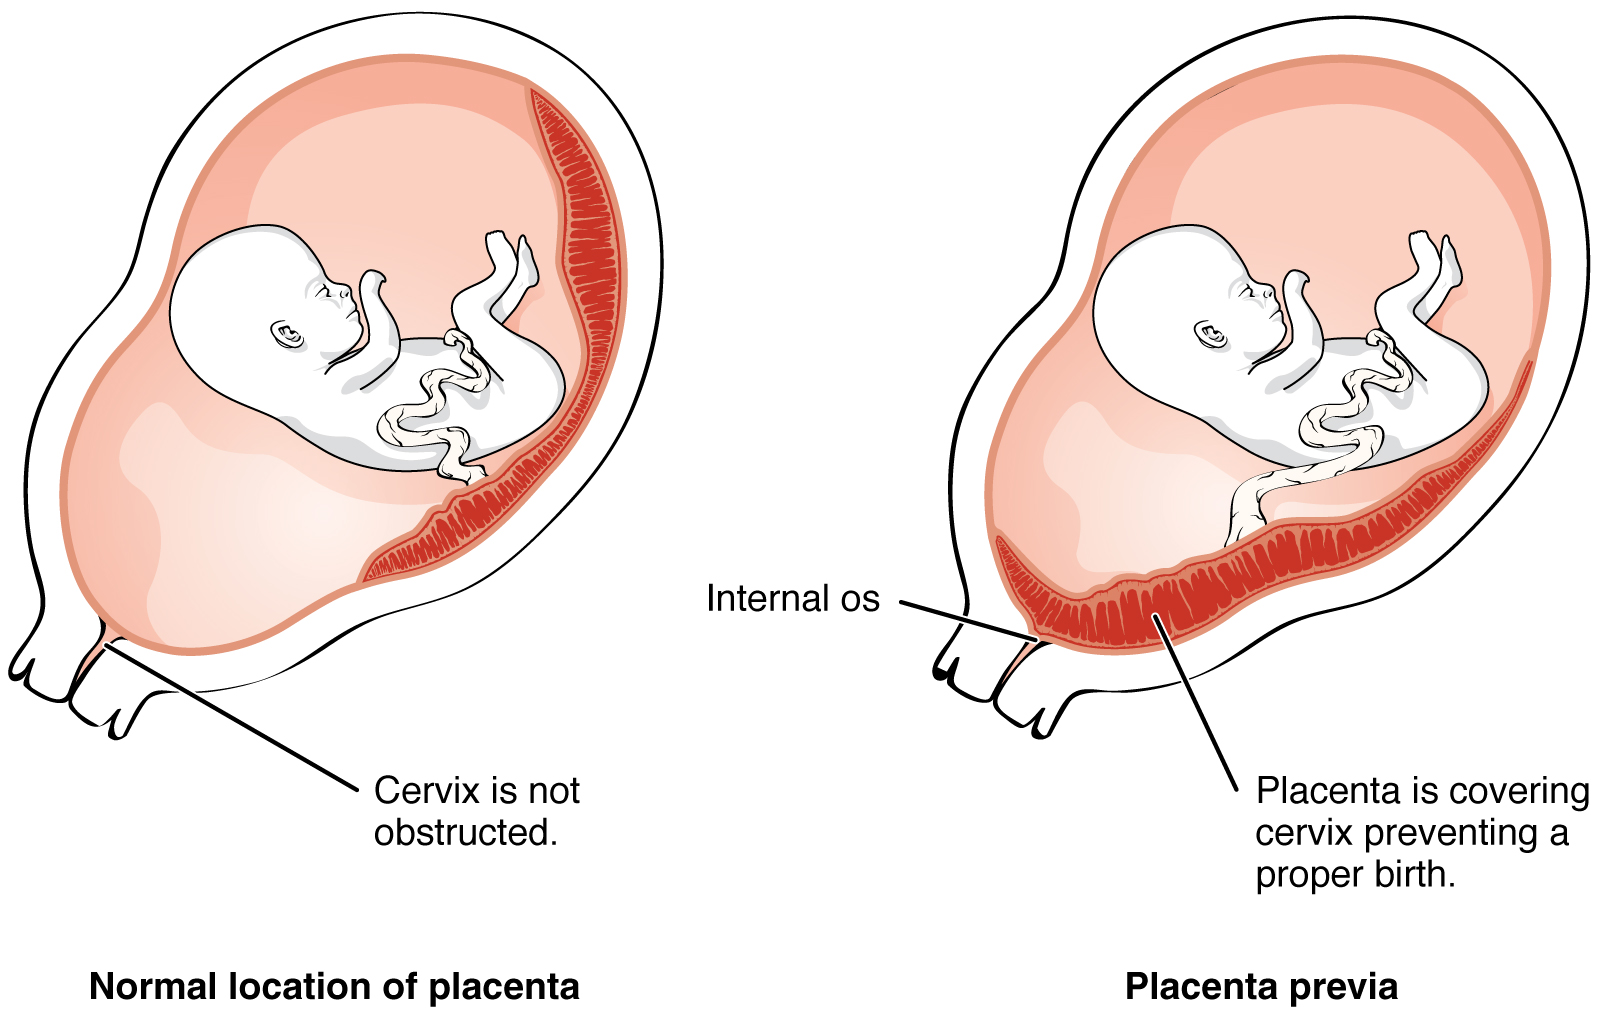 El panel izquierdo de esta imagen muestra la ubicación normal de la placenta y el panel derecho muestra la ubicación de la placenta en placenta previa.